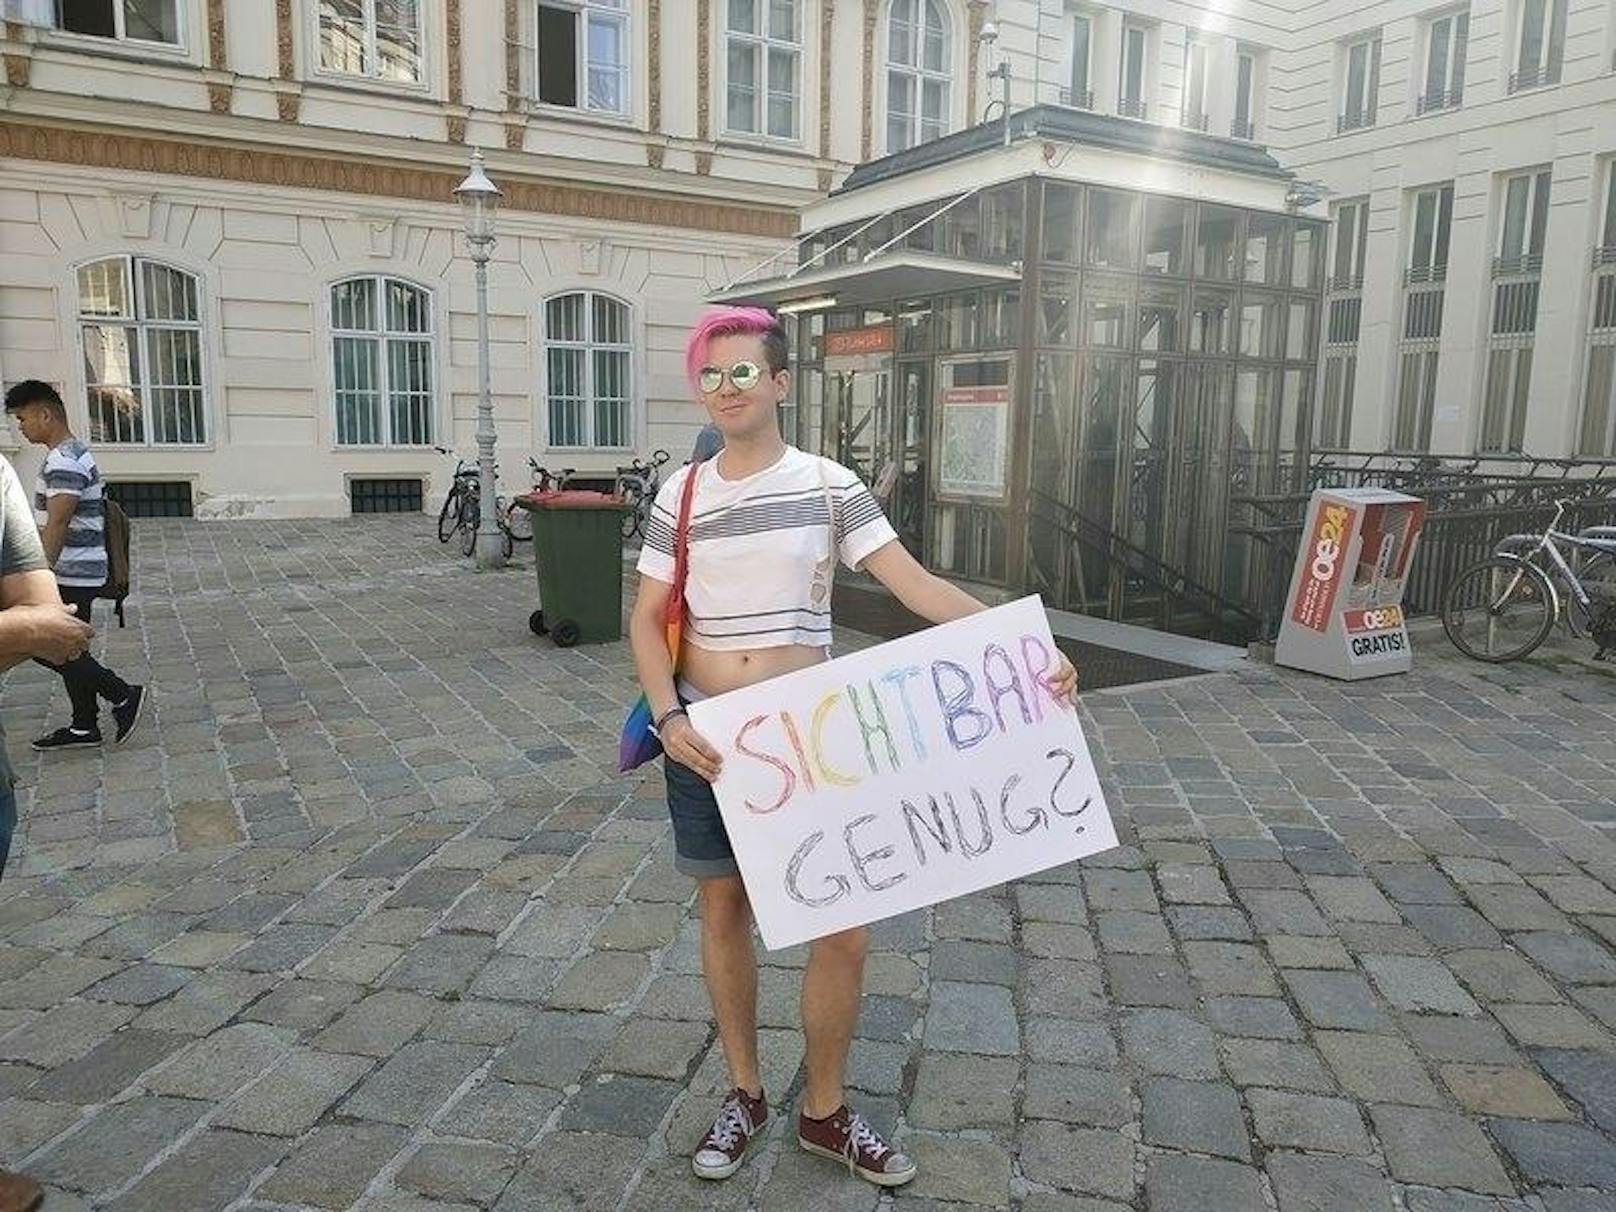 Wann ist Homosexualität "sichtbar genug" fragt dieser junge Mann mit seinem Plakat.